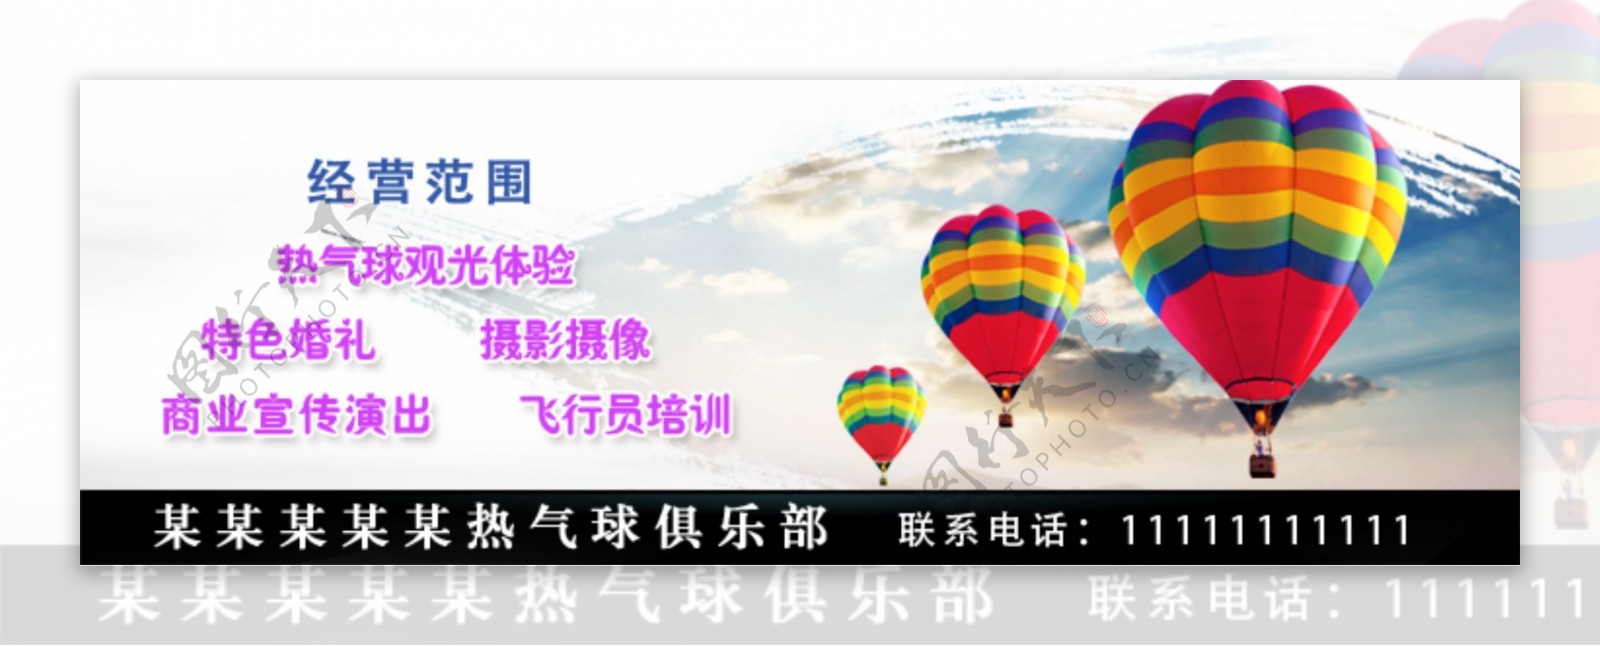 热气球广告图psd格式